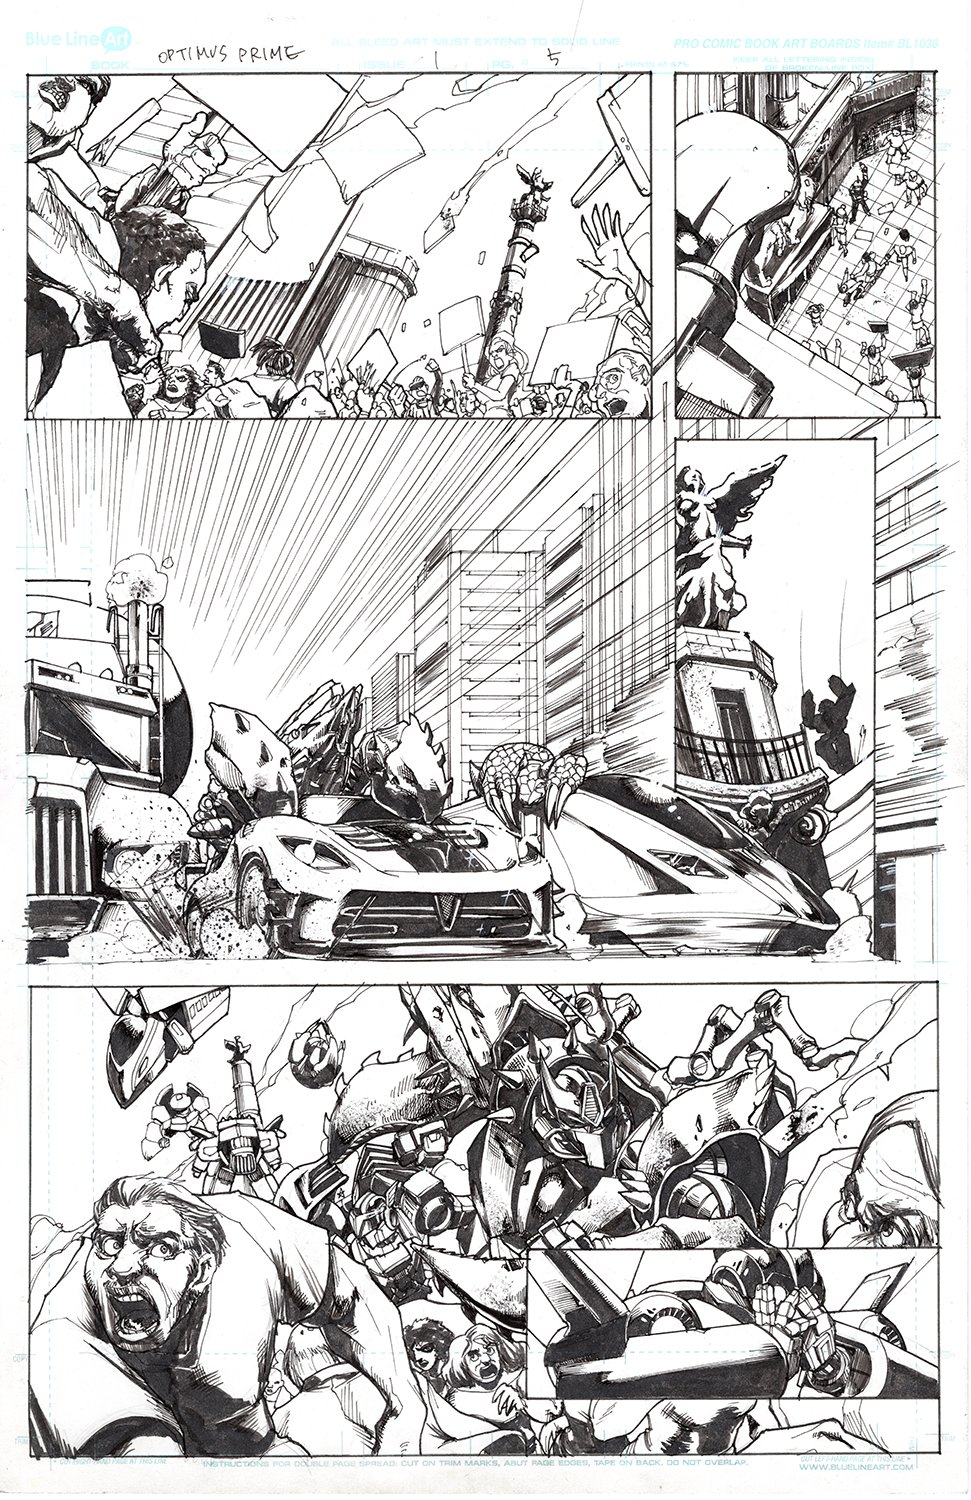 Optimus Prime #1 Page 05